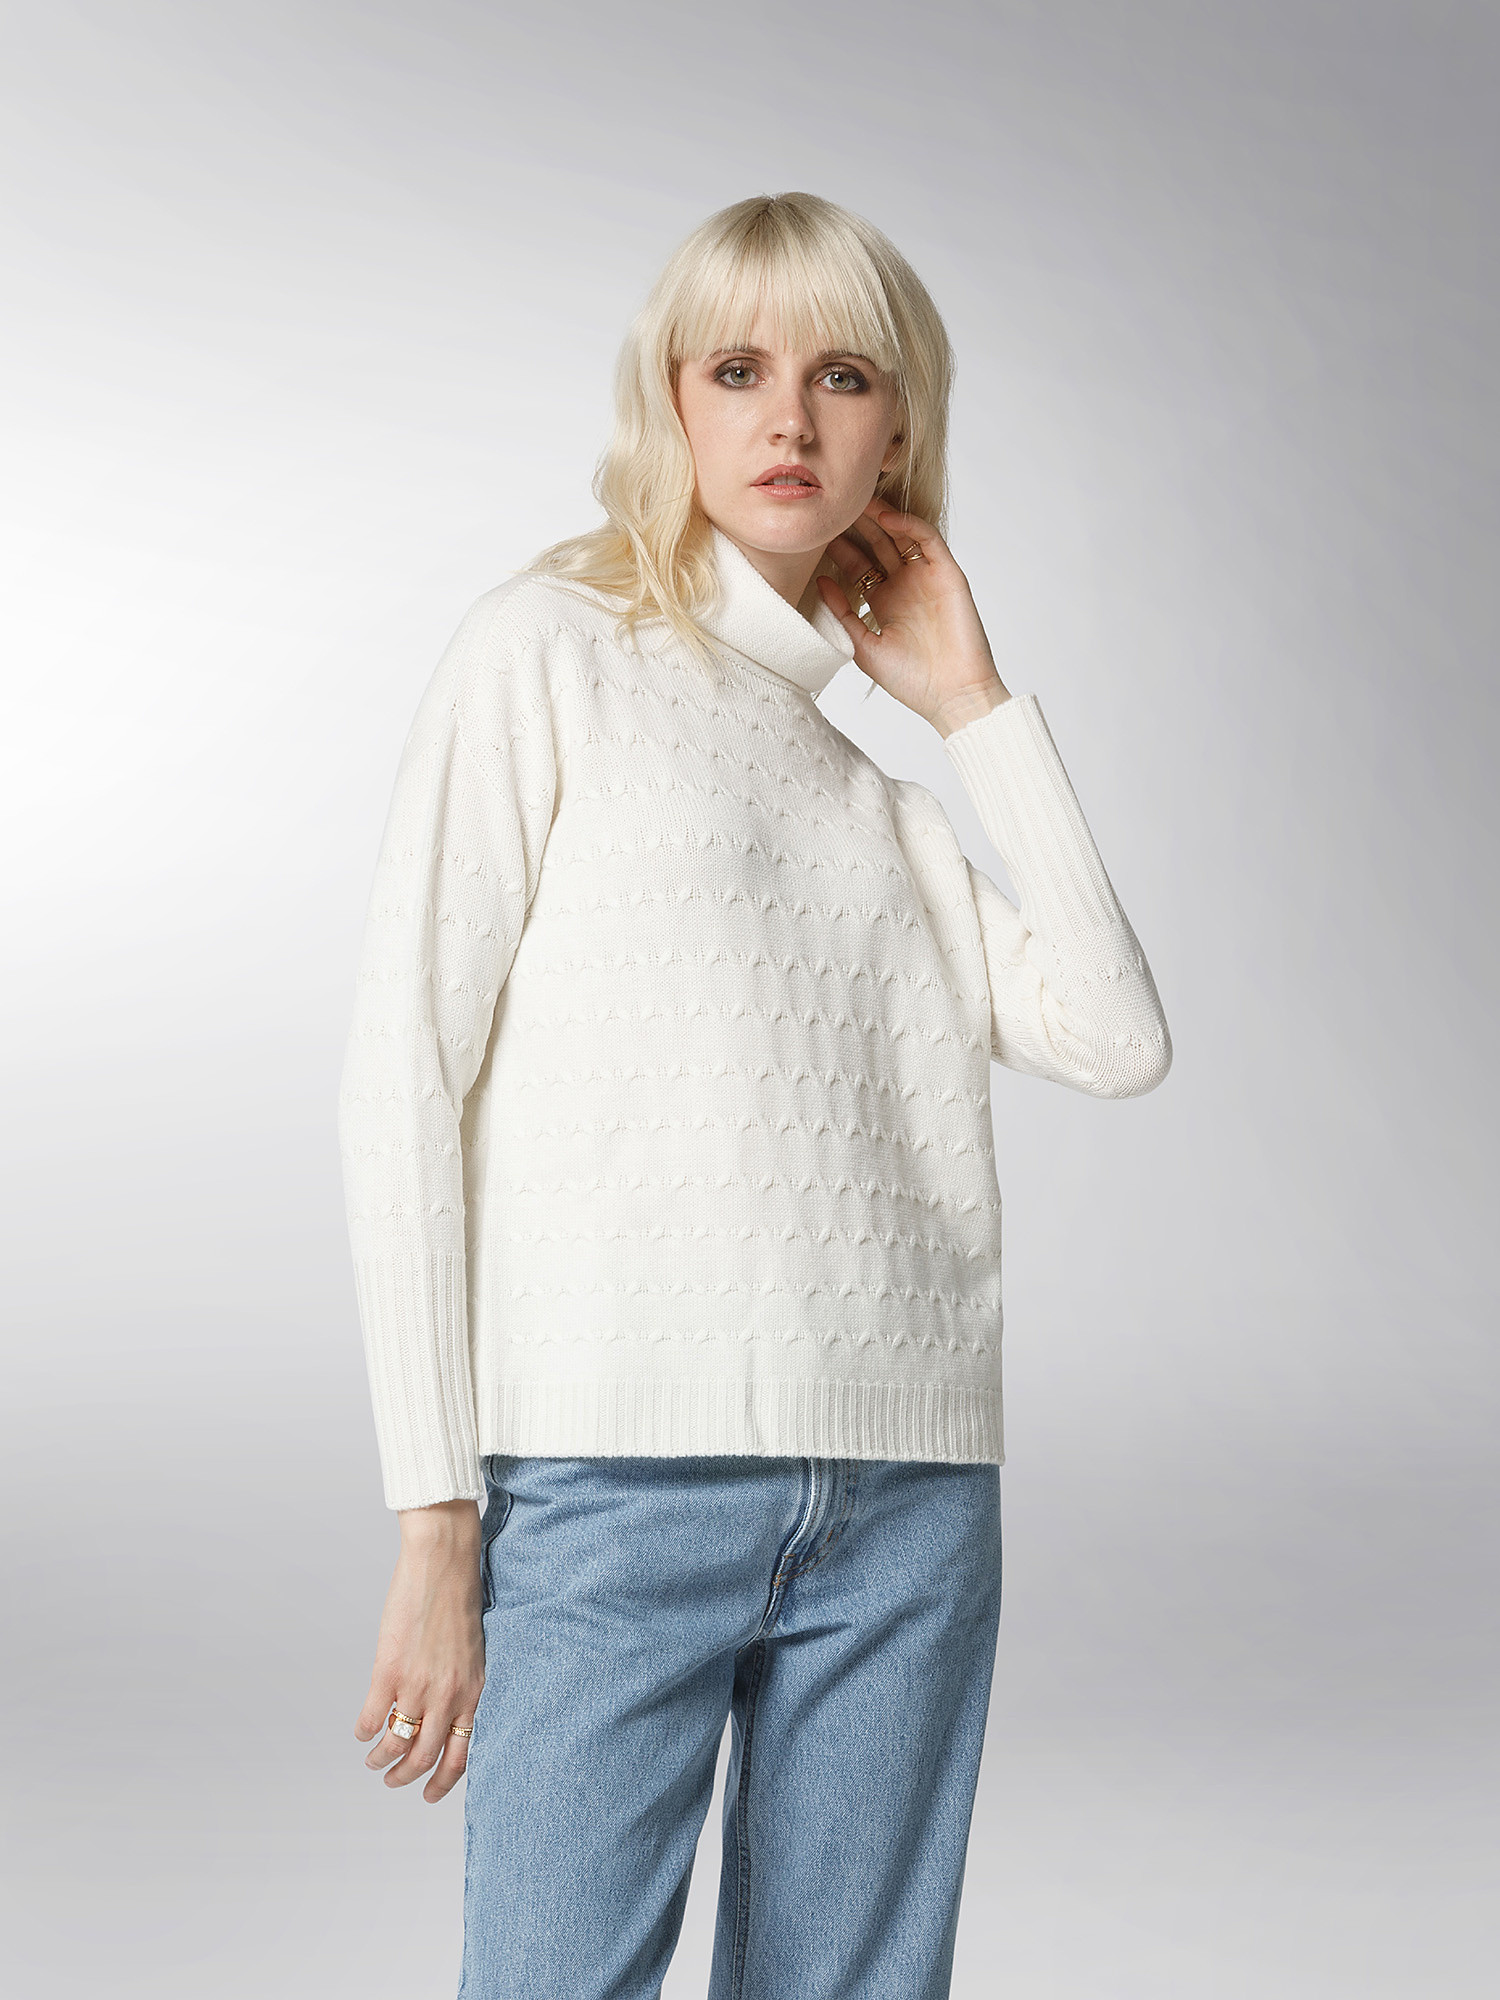 K Collection - Crewneck pullover, Ecru, large image number 3